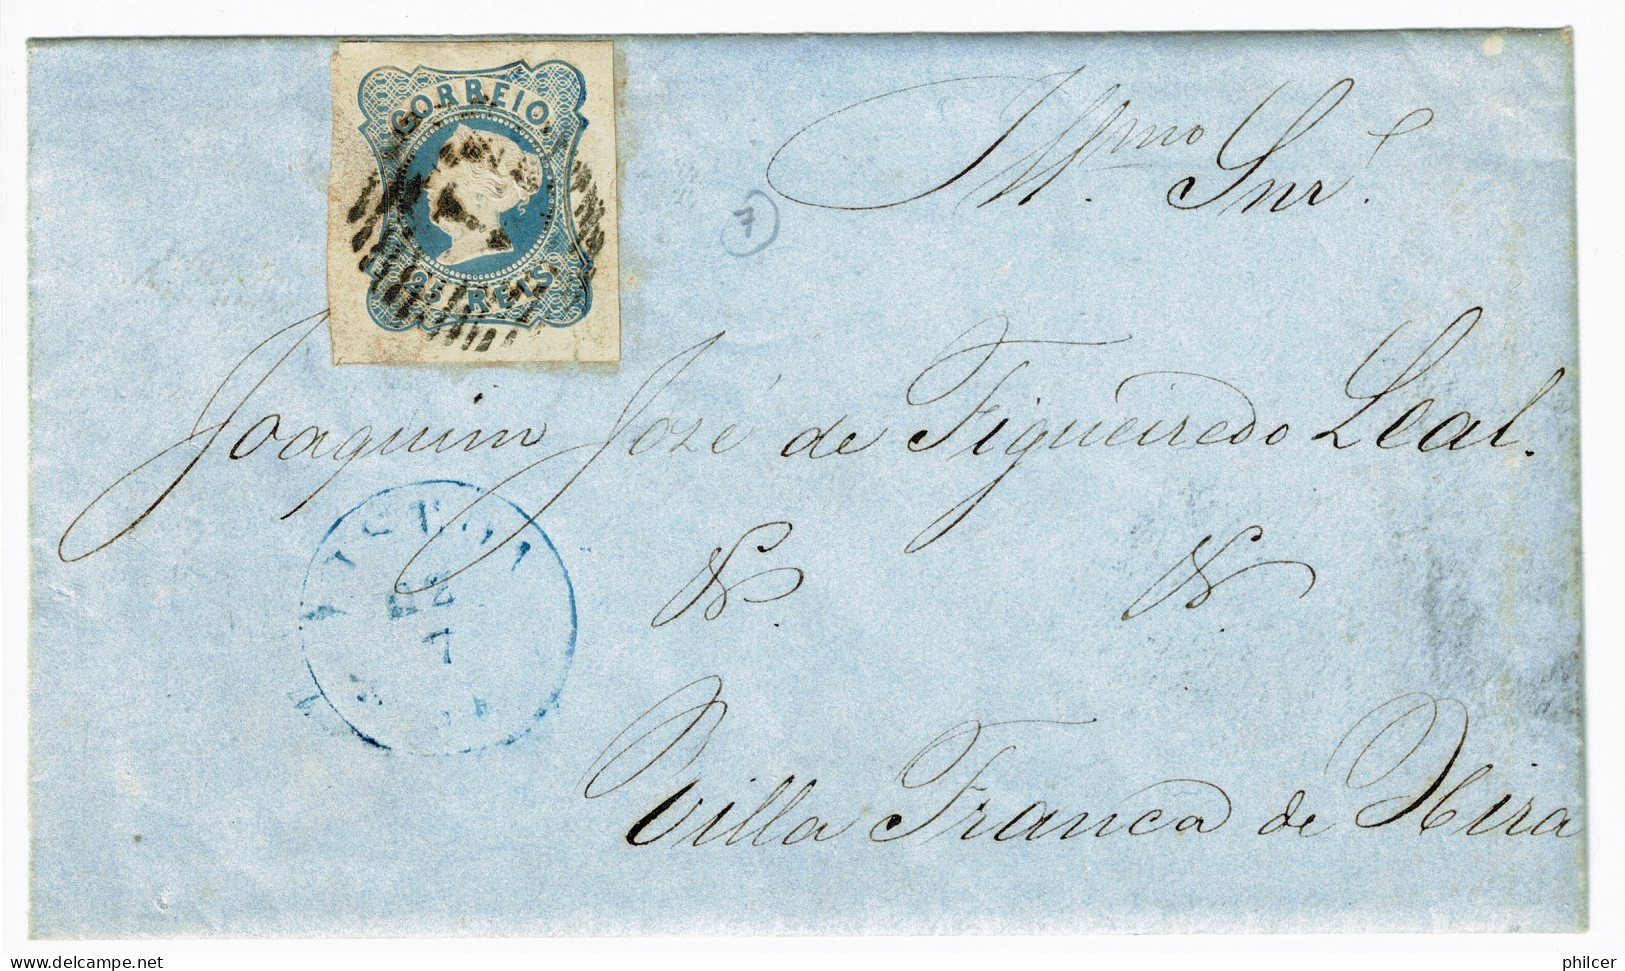 Portugal, 1854, # 2, Para Vila Franca De Xira - Briefe U. Dokumente